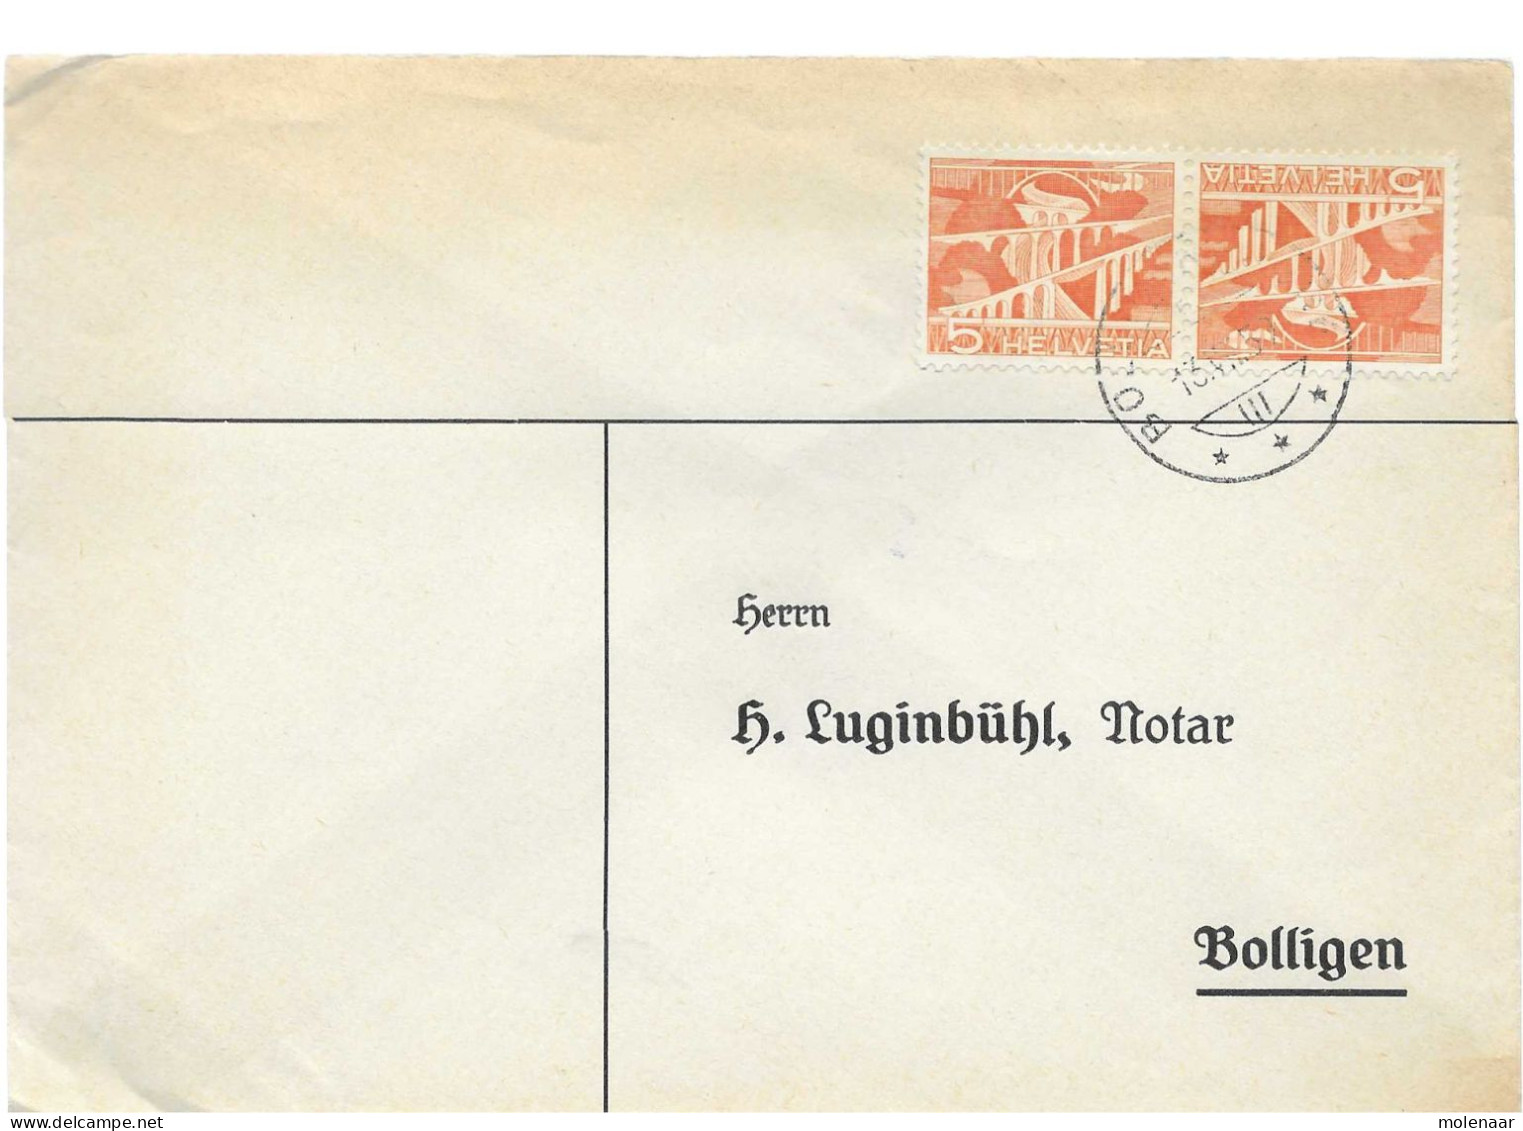 Postzegels > Europa > Zwitserland > 1940-1949 > Brief Met Tete Beche No. 524 (17644) - Briefe U. Dokumente